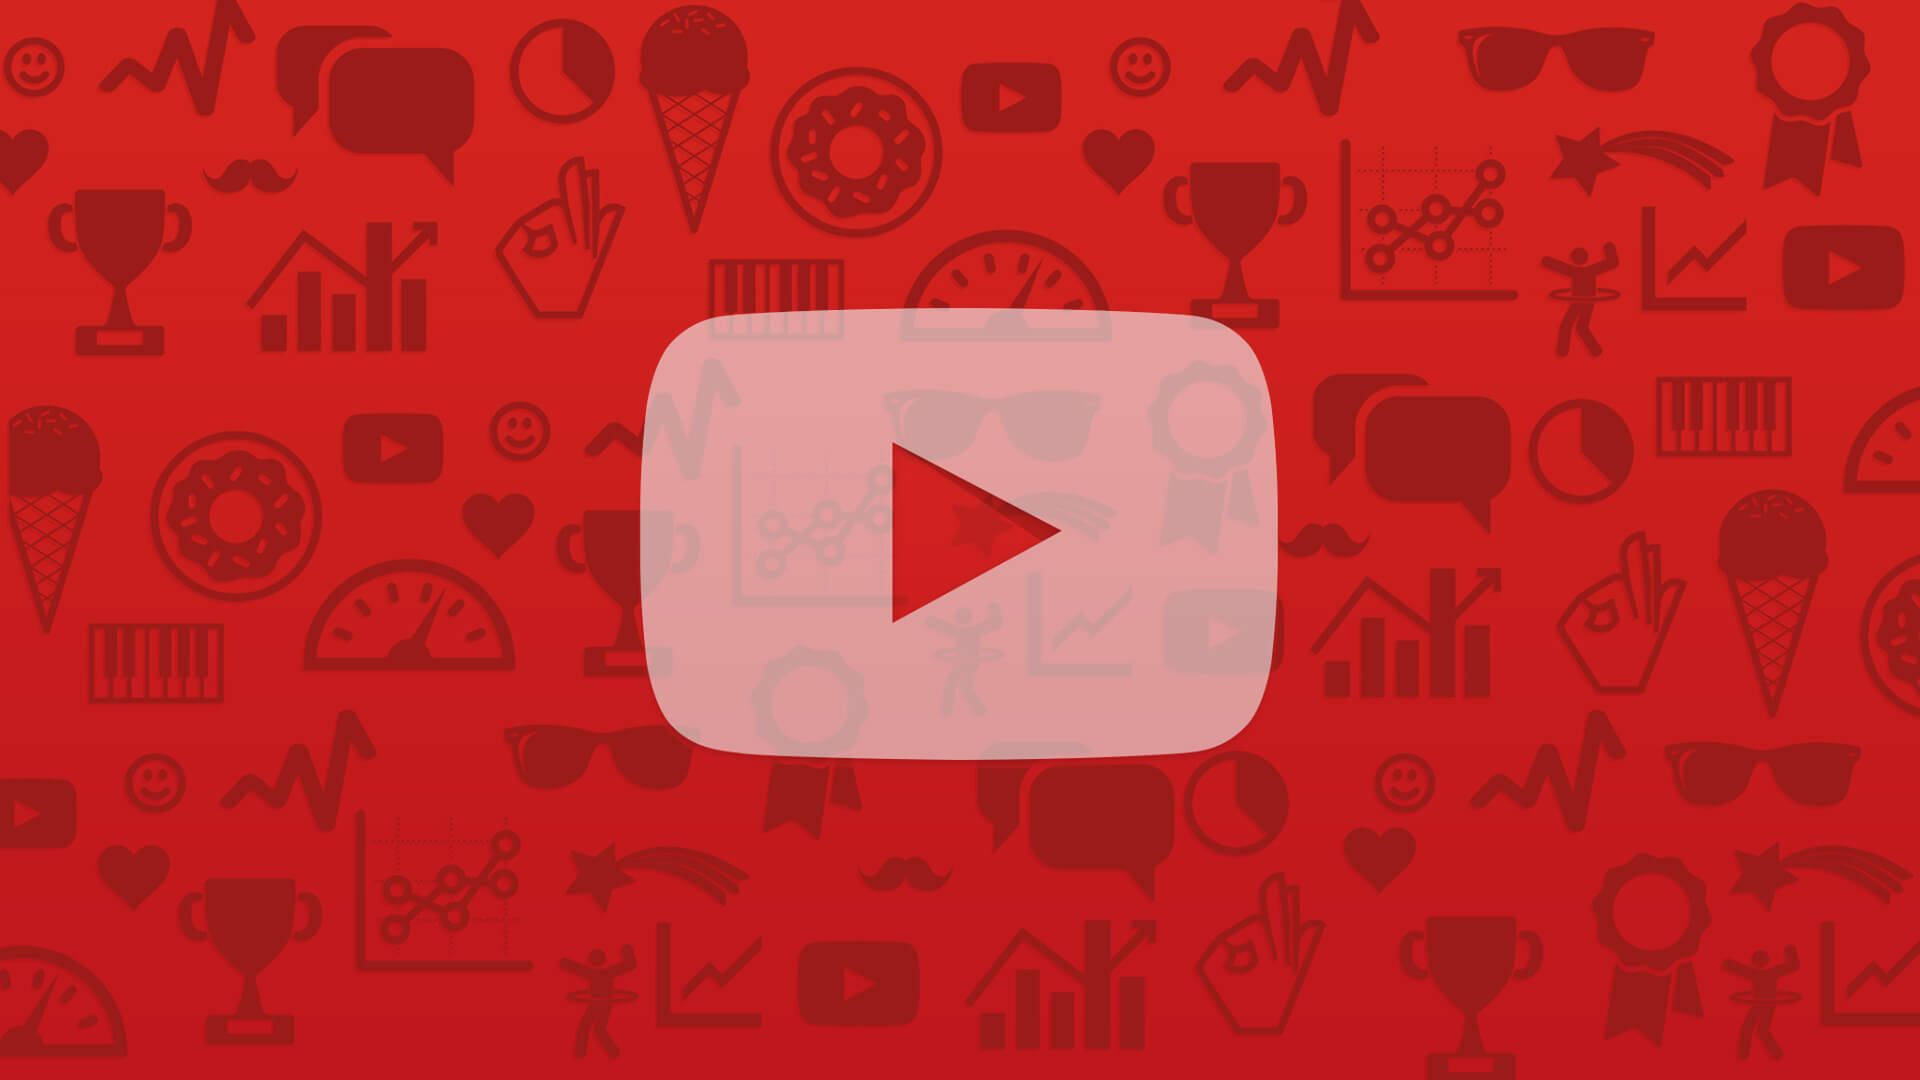 Fondorepleto De Garabatos Rojos Con El Logotipo De Youtube. Fondo de pantalla